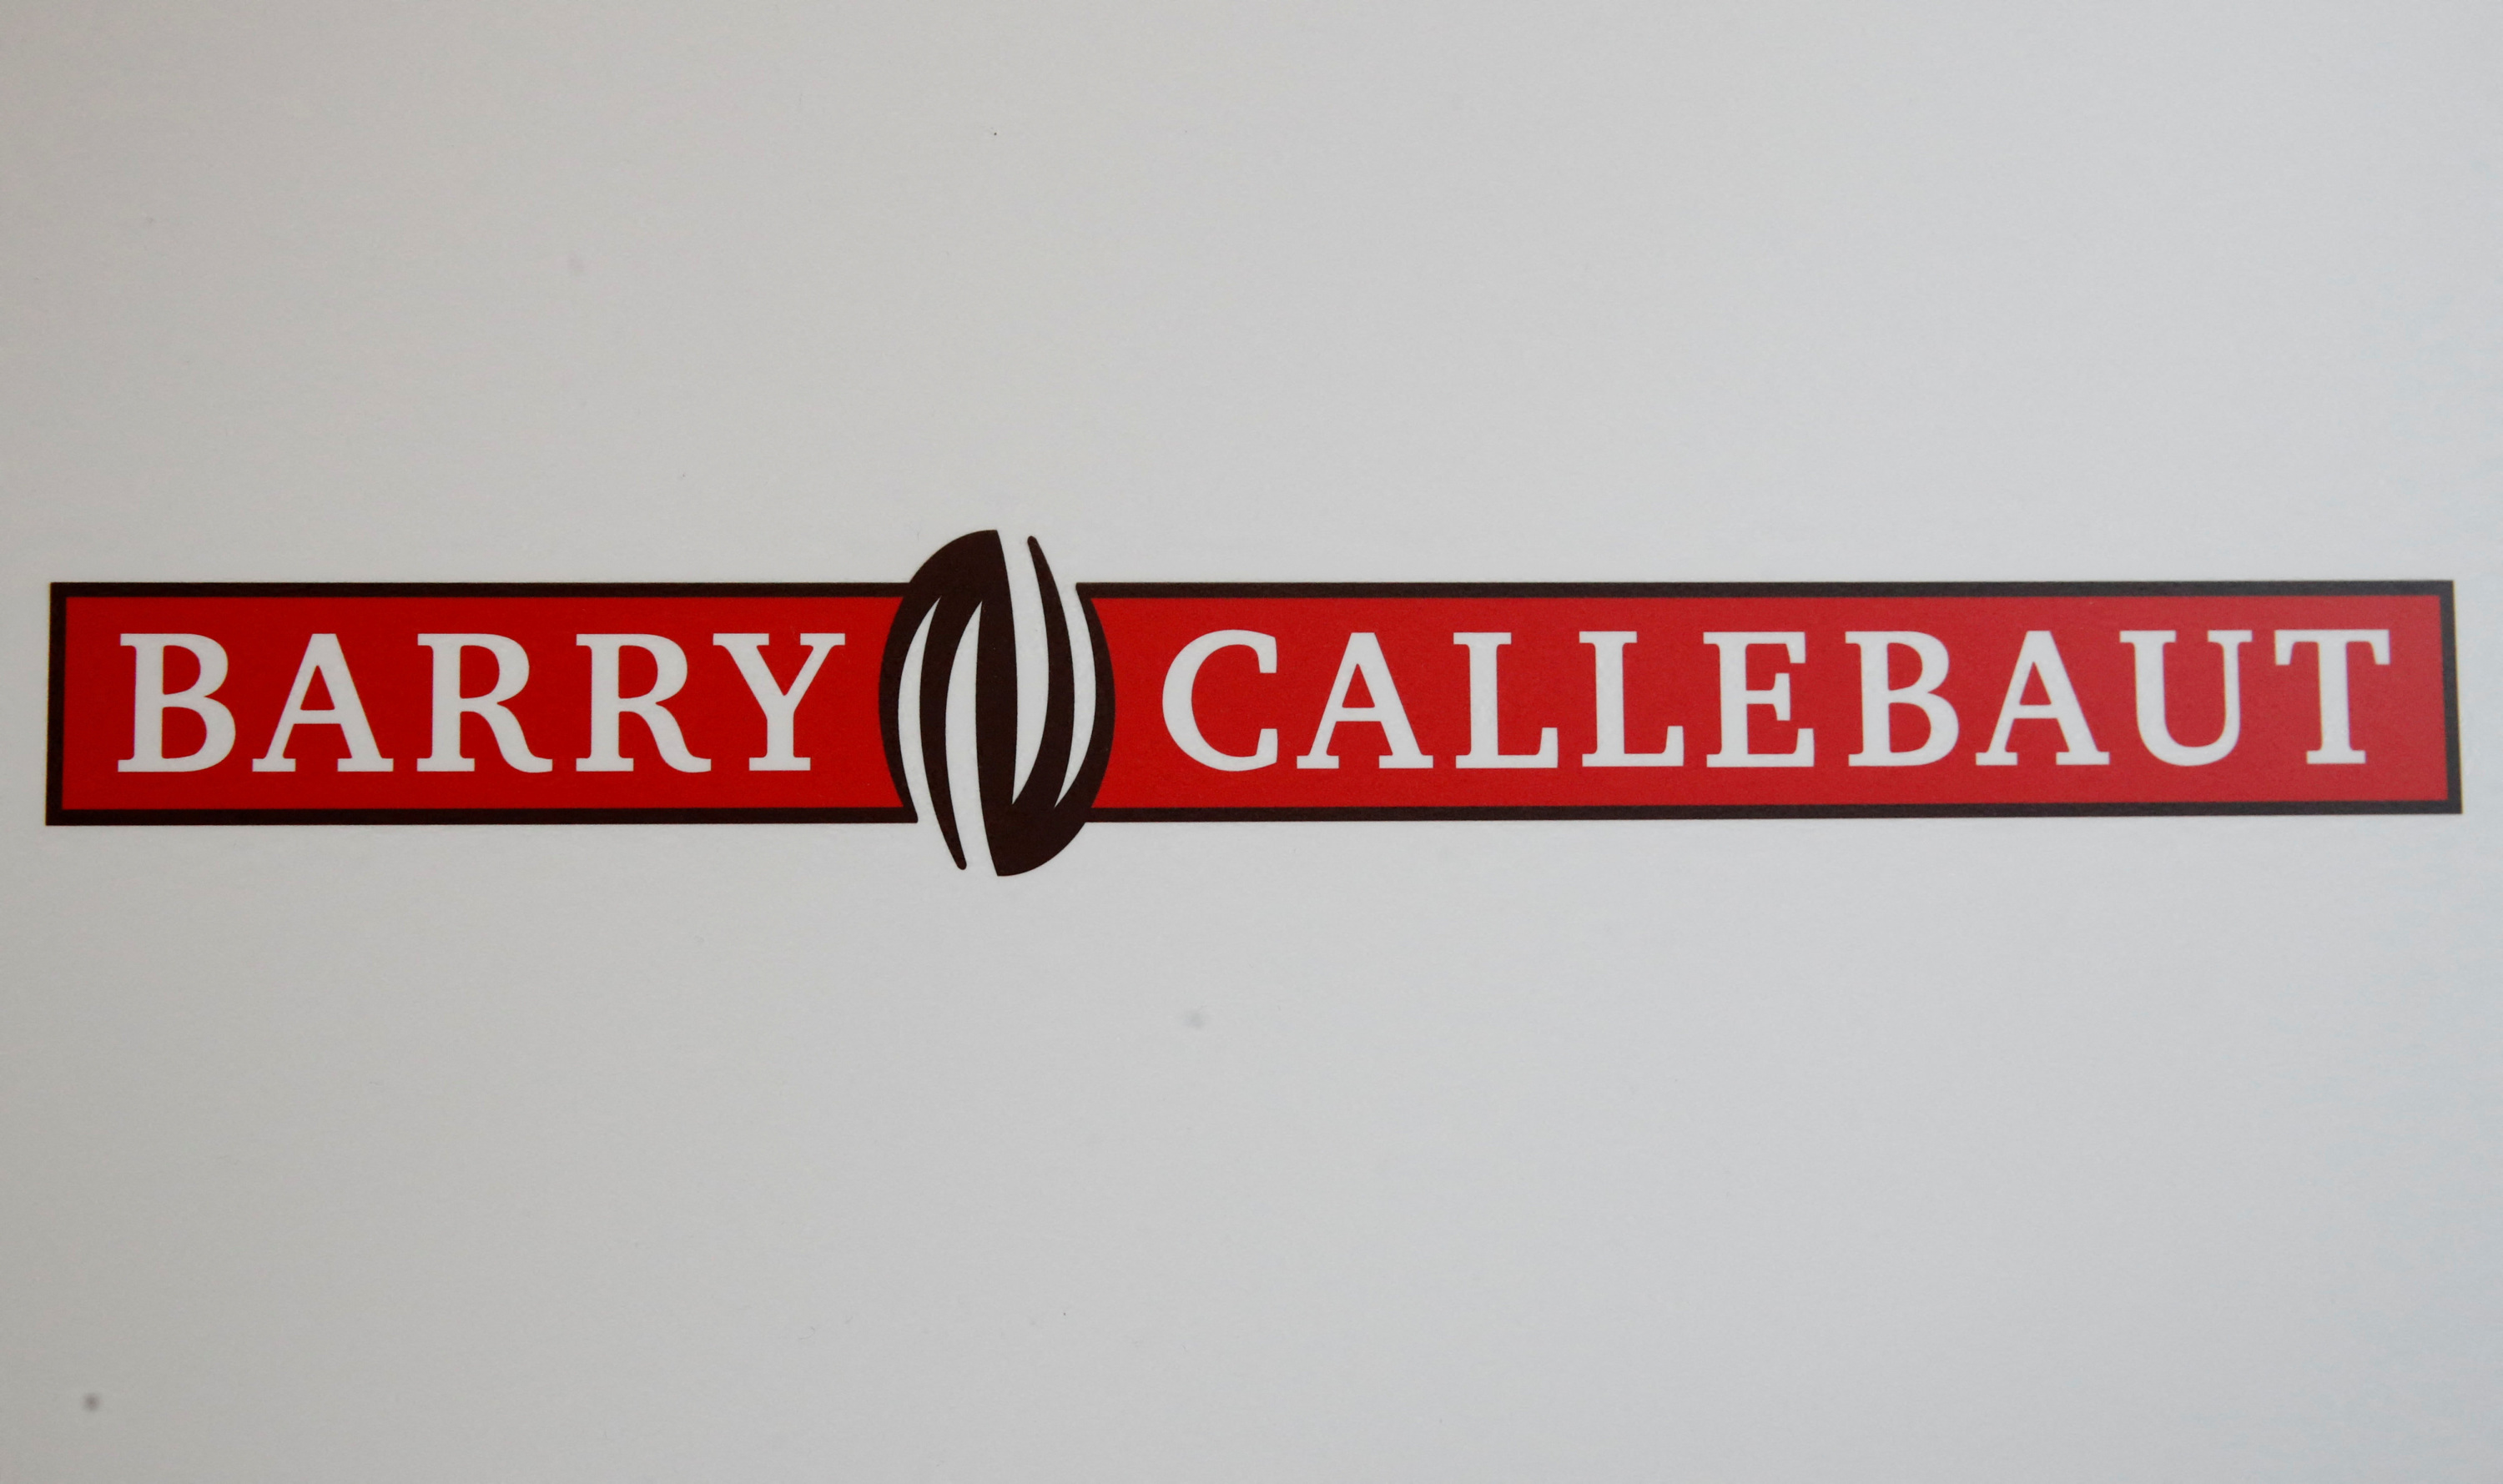 Barry Callebaut a vu son bénéfice chuter au premier semestre et se montre prudent face à la flambée du cacao